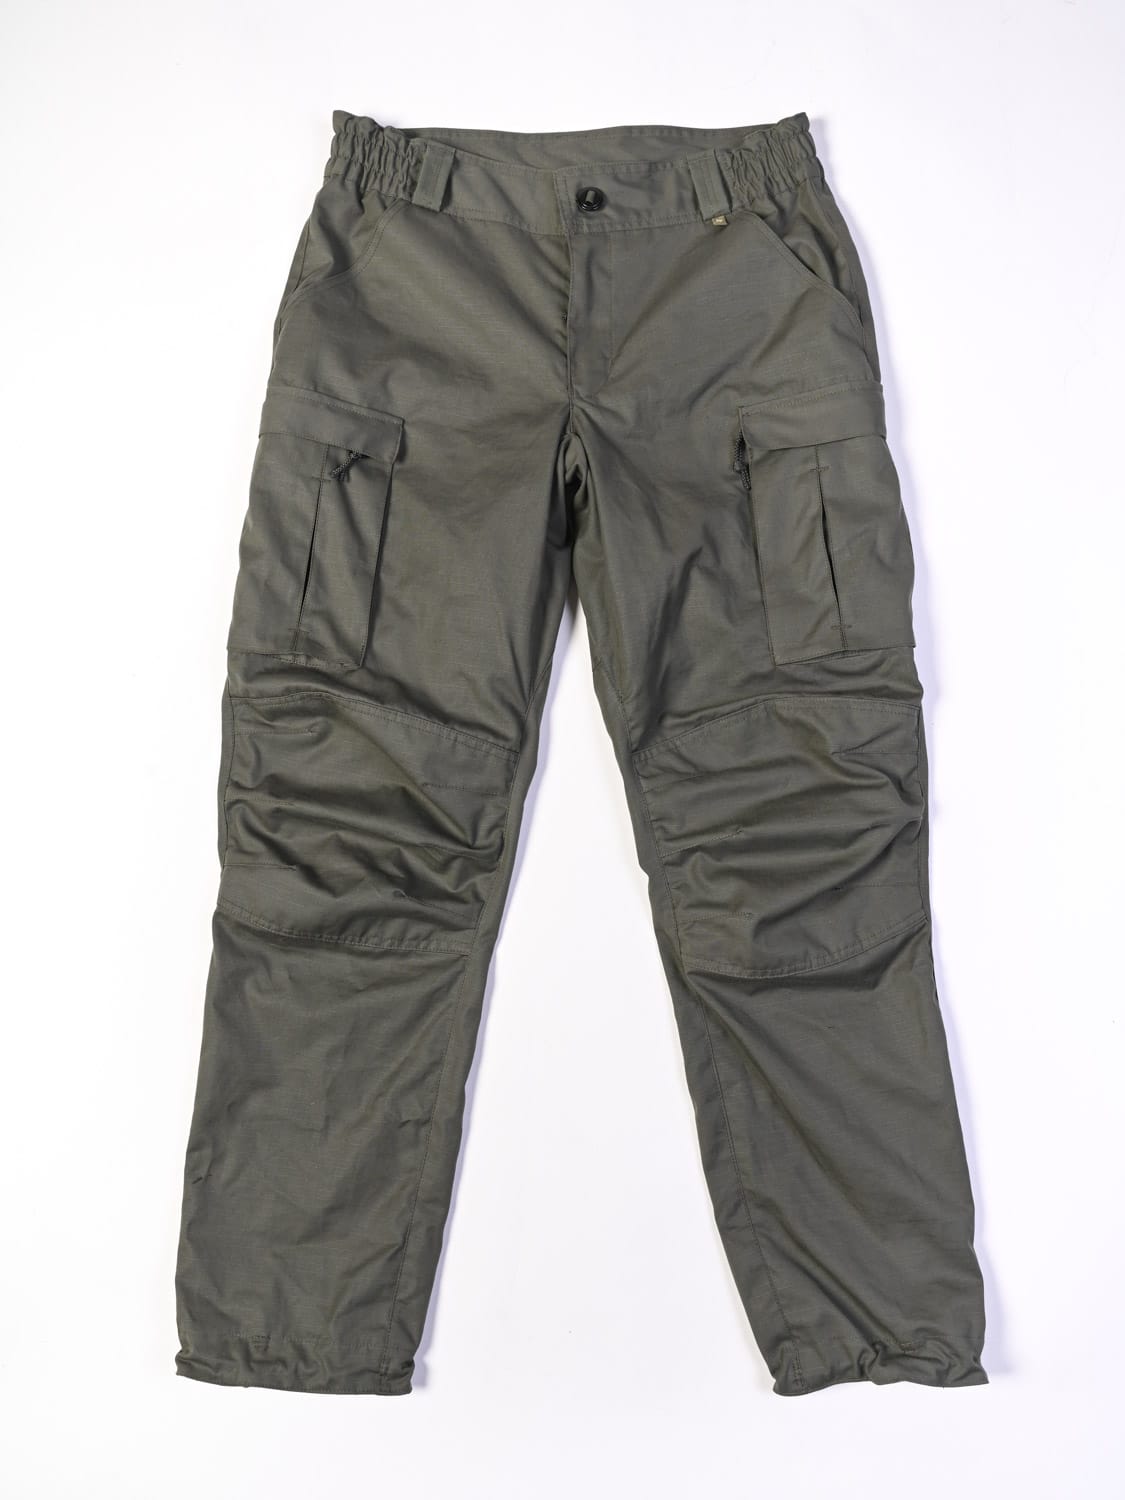 IDF Tactical Uniform Pants | Kasda